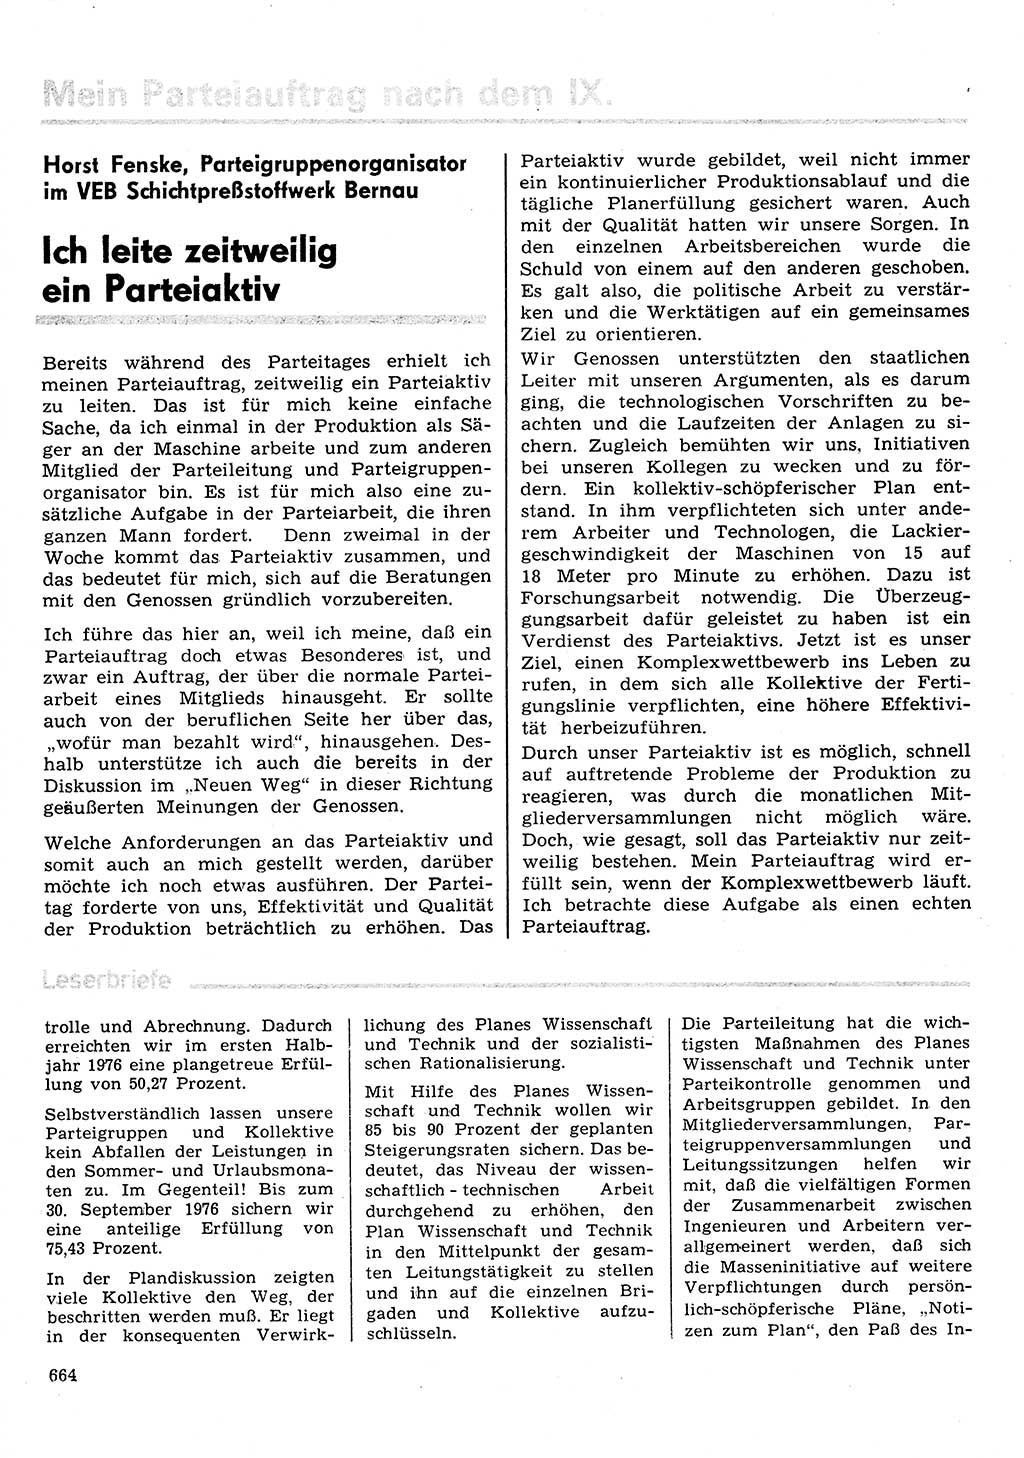 Neuer Weg (NW), Organ des Zentralkomitees (ZK) der SED (Sozialistische Einheitspartei Deutschlands) für Fragen des Parteilebens, 31. Jahrgang [Deutsche Demokratische Republik (DDR)] 1976, Seite 664 (NW ZK SED DDR 1976, S. 664)